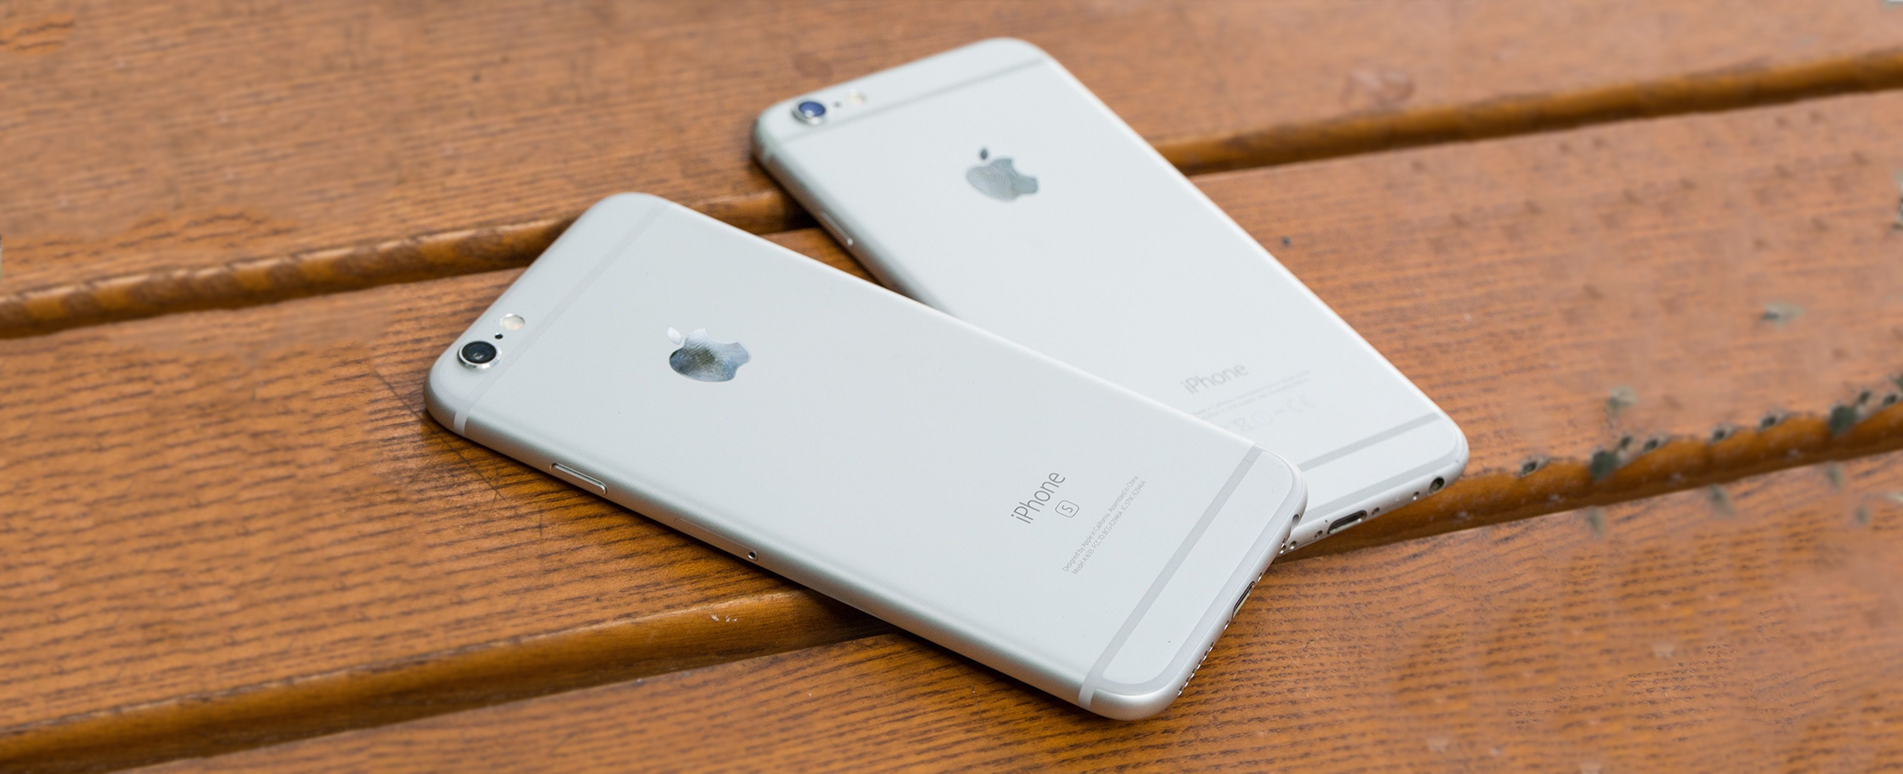 iPhone zin và iPhone Fullbox có chất lượng tương đương nhau